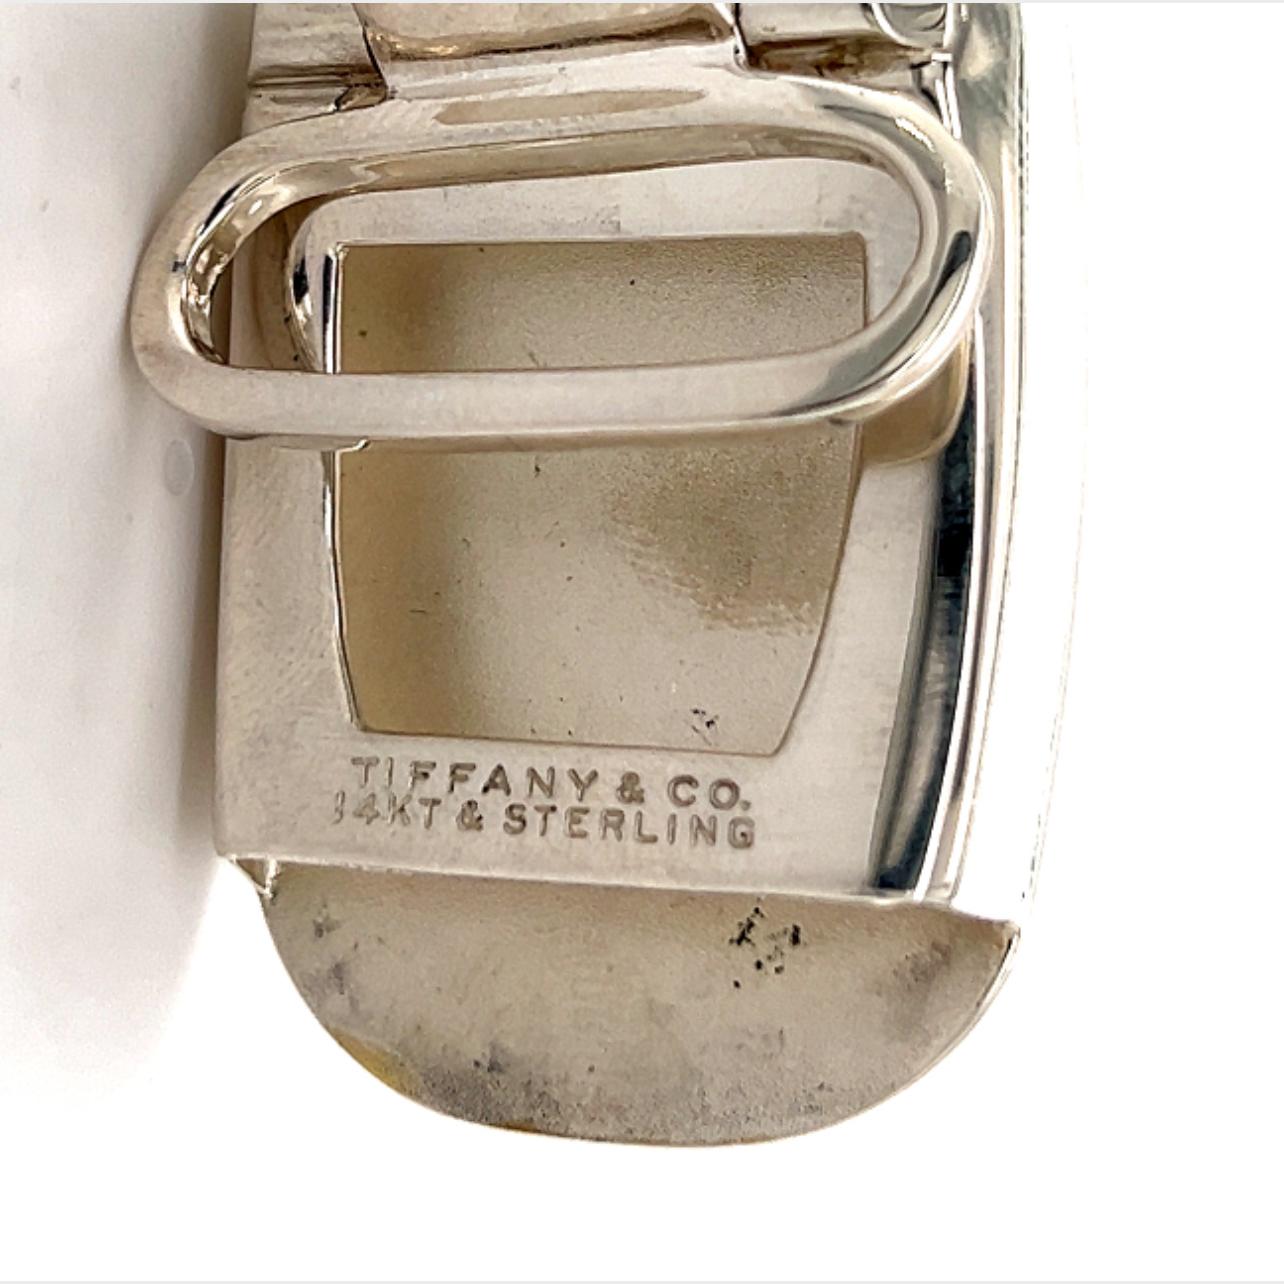 Tiffany & Co. Estate Mens Belt Buckle 14k Gold Sterling Silver 24.5g 4